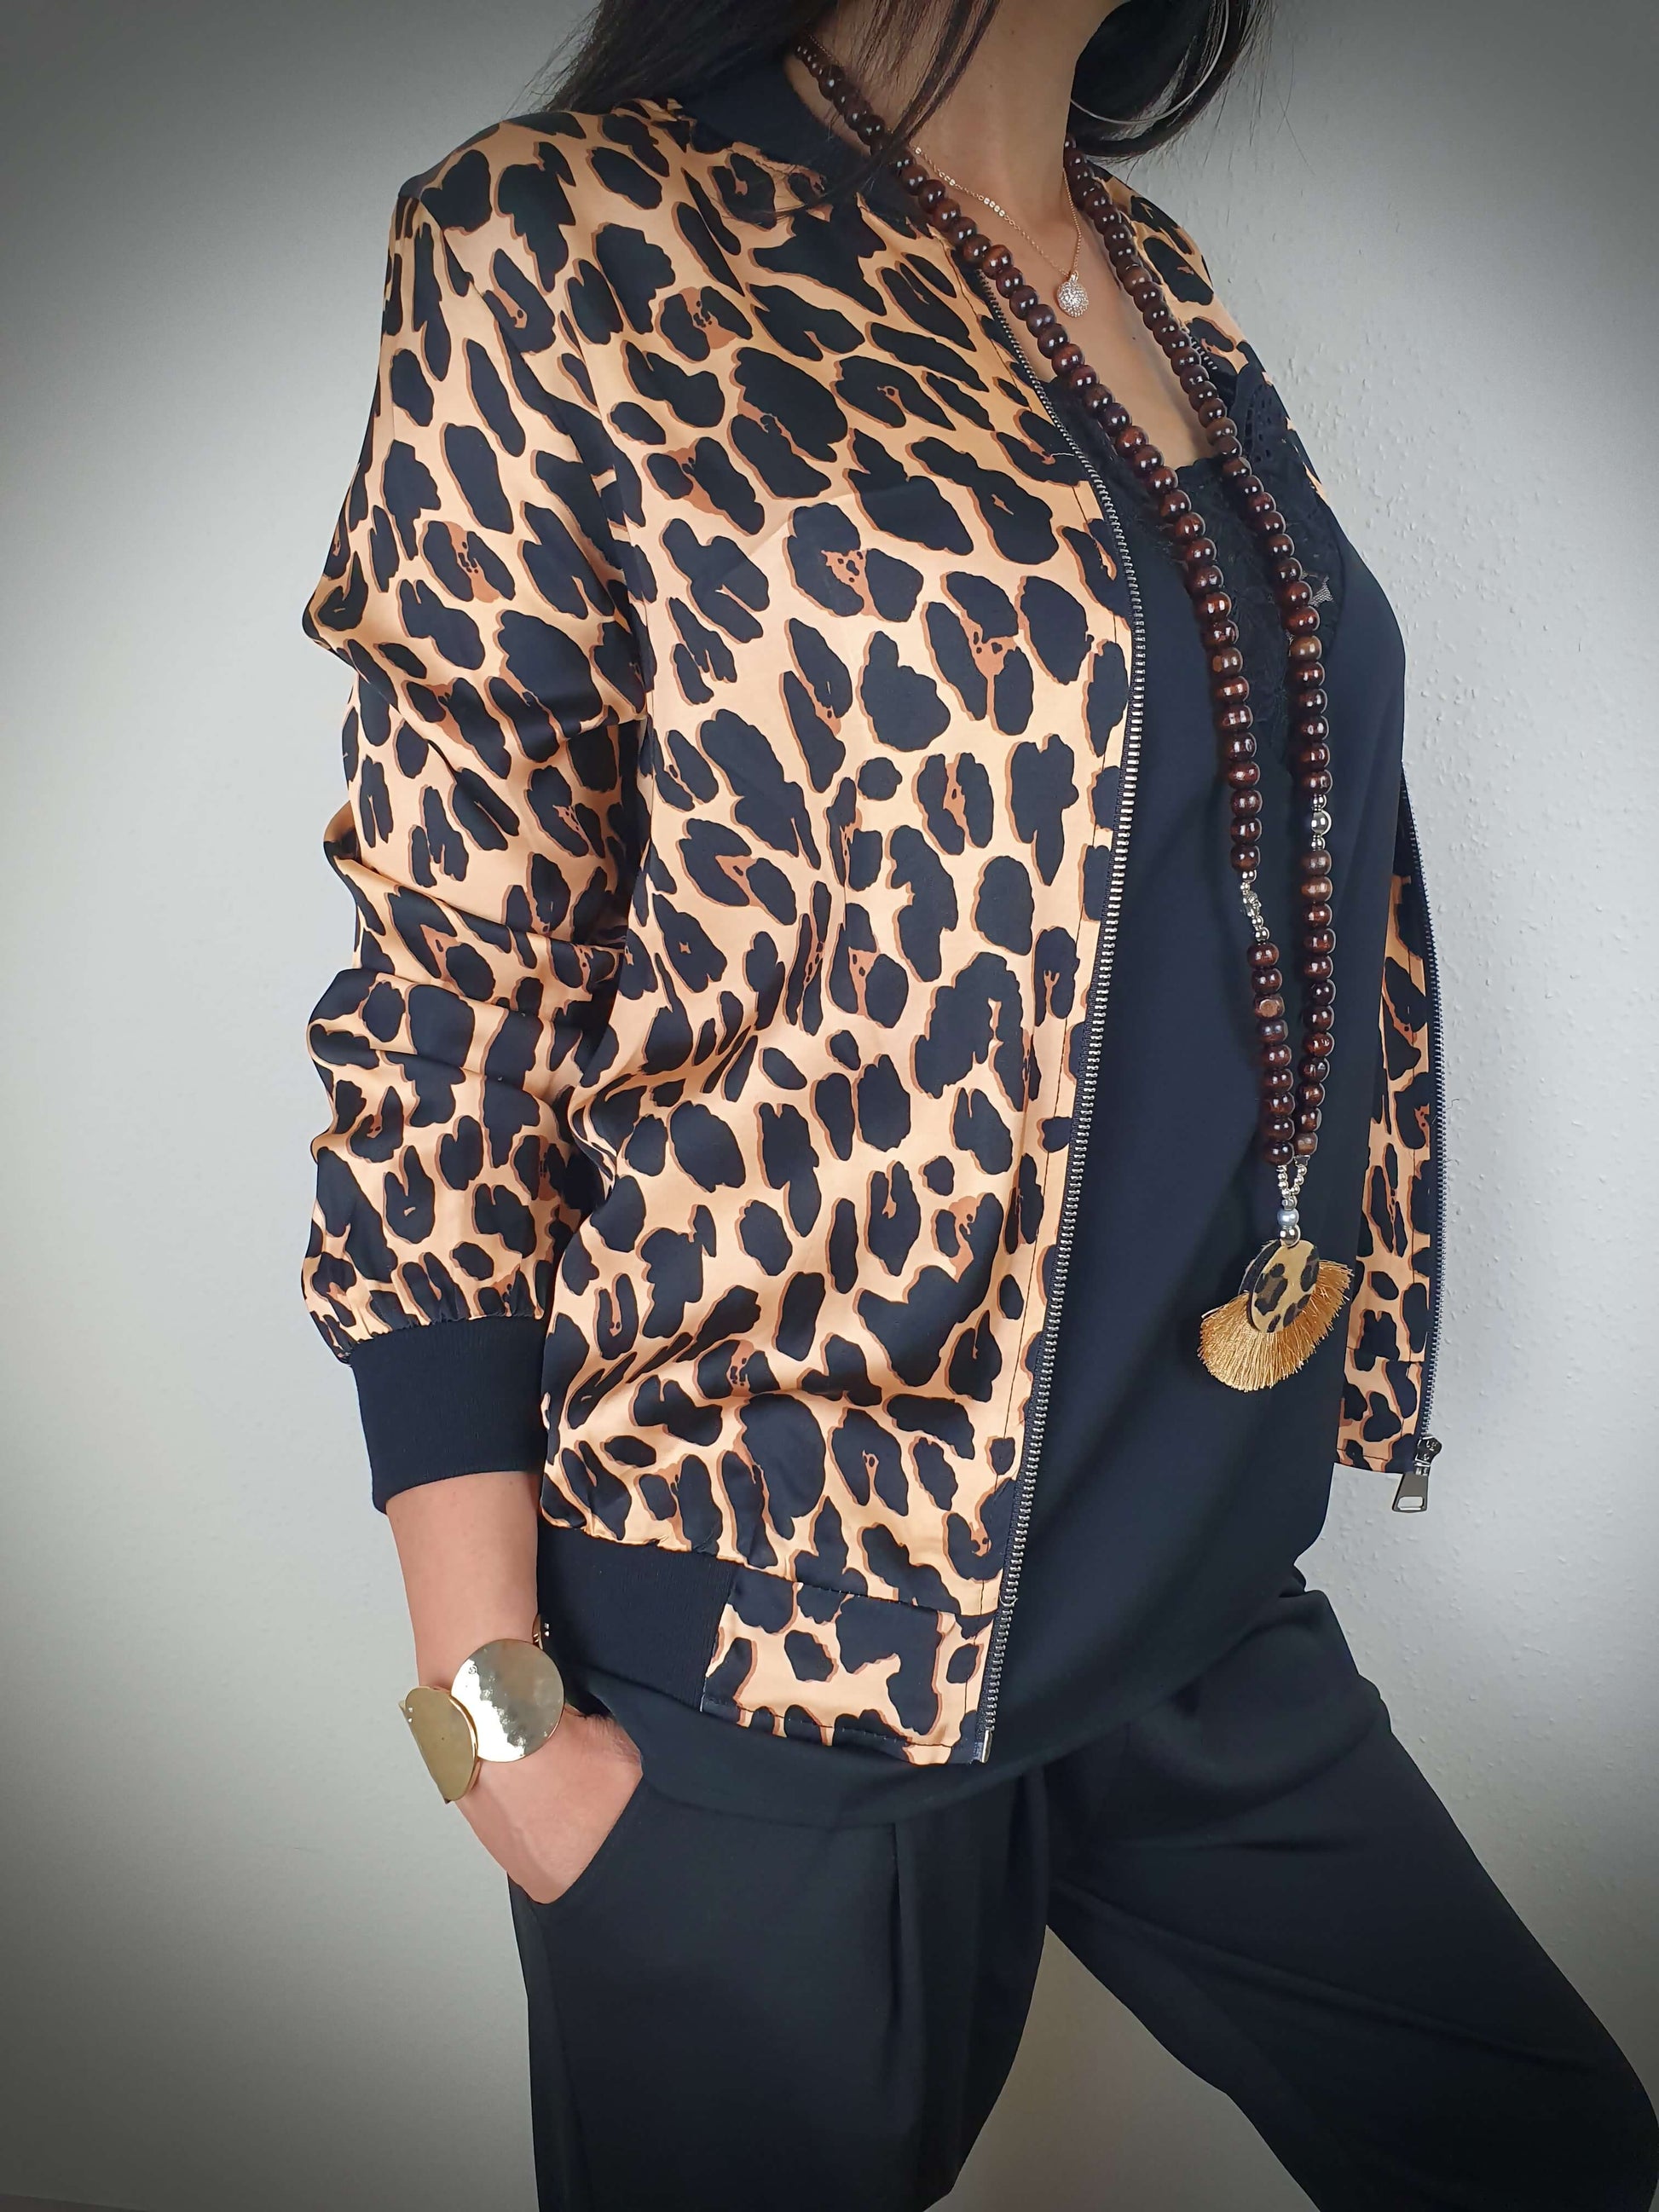 "Cette veste imprimée léopard est un véritable incontournable. Son style intemporel est rehaussé par son col, ses poignets et sa taille côtelés. Les manches longues ajoutent une touche de sophistication. Fabriquée en Italie, elle est confectionnée dans un tissu doux et satiné composé à 80% de viscose et à 20% de satin, offrant un confort luxueux. La fermeture zippée sur l'avant facilite son enfilage."